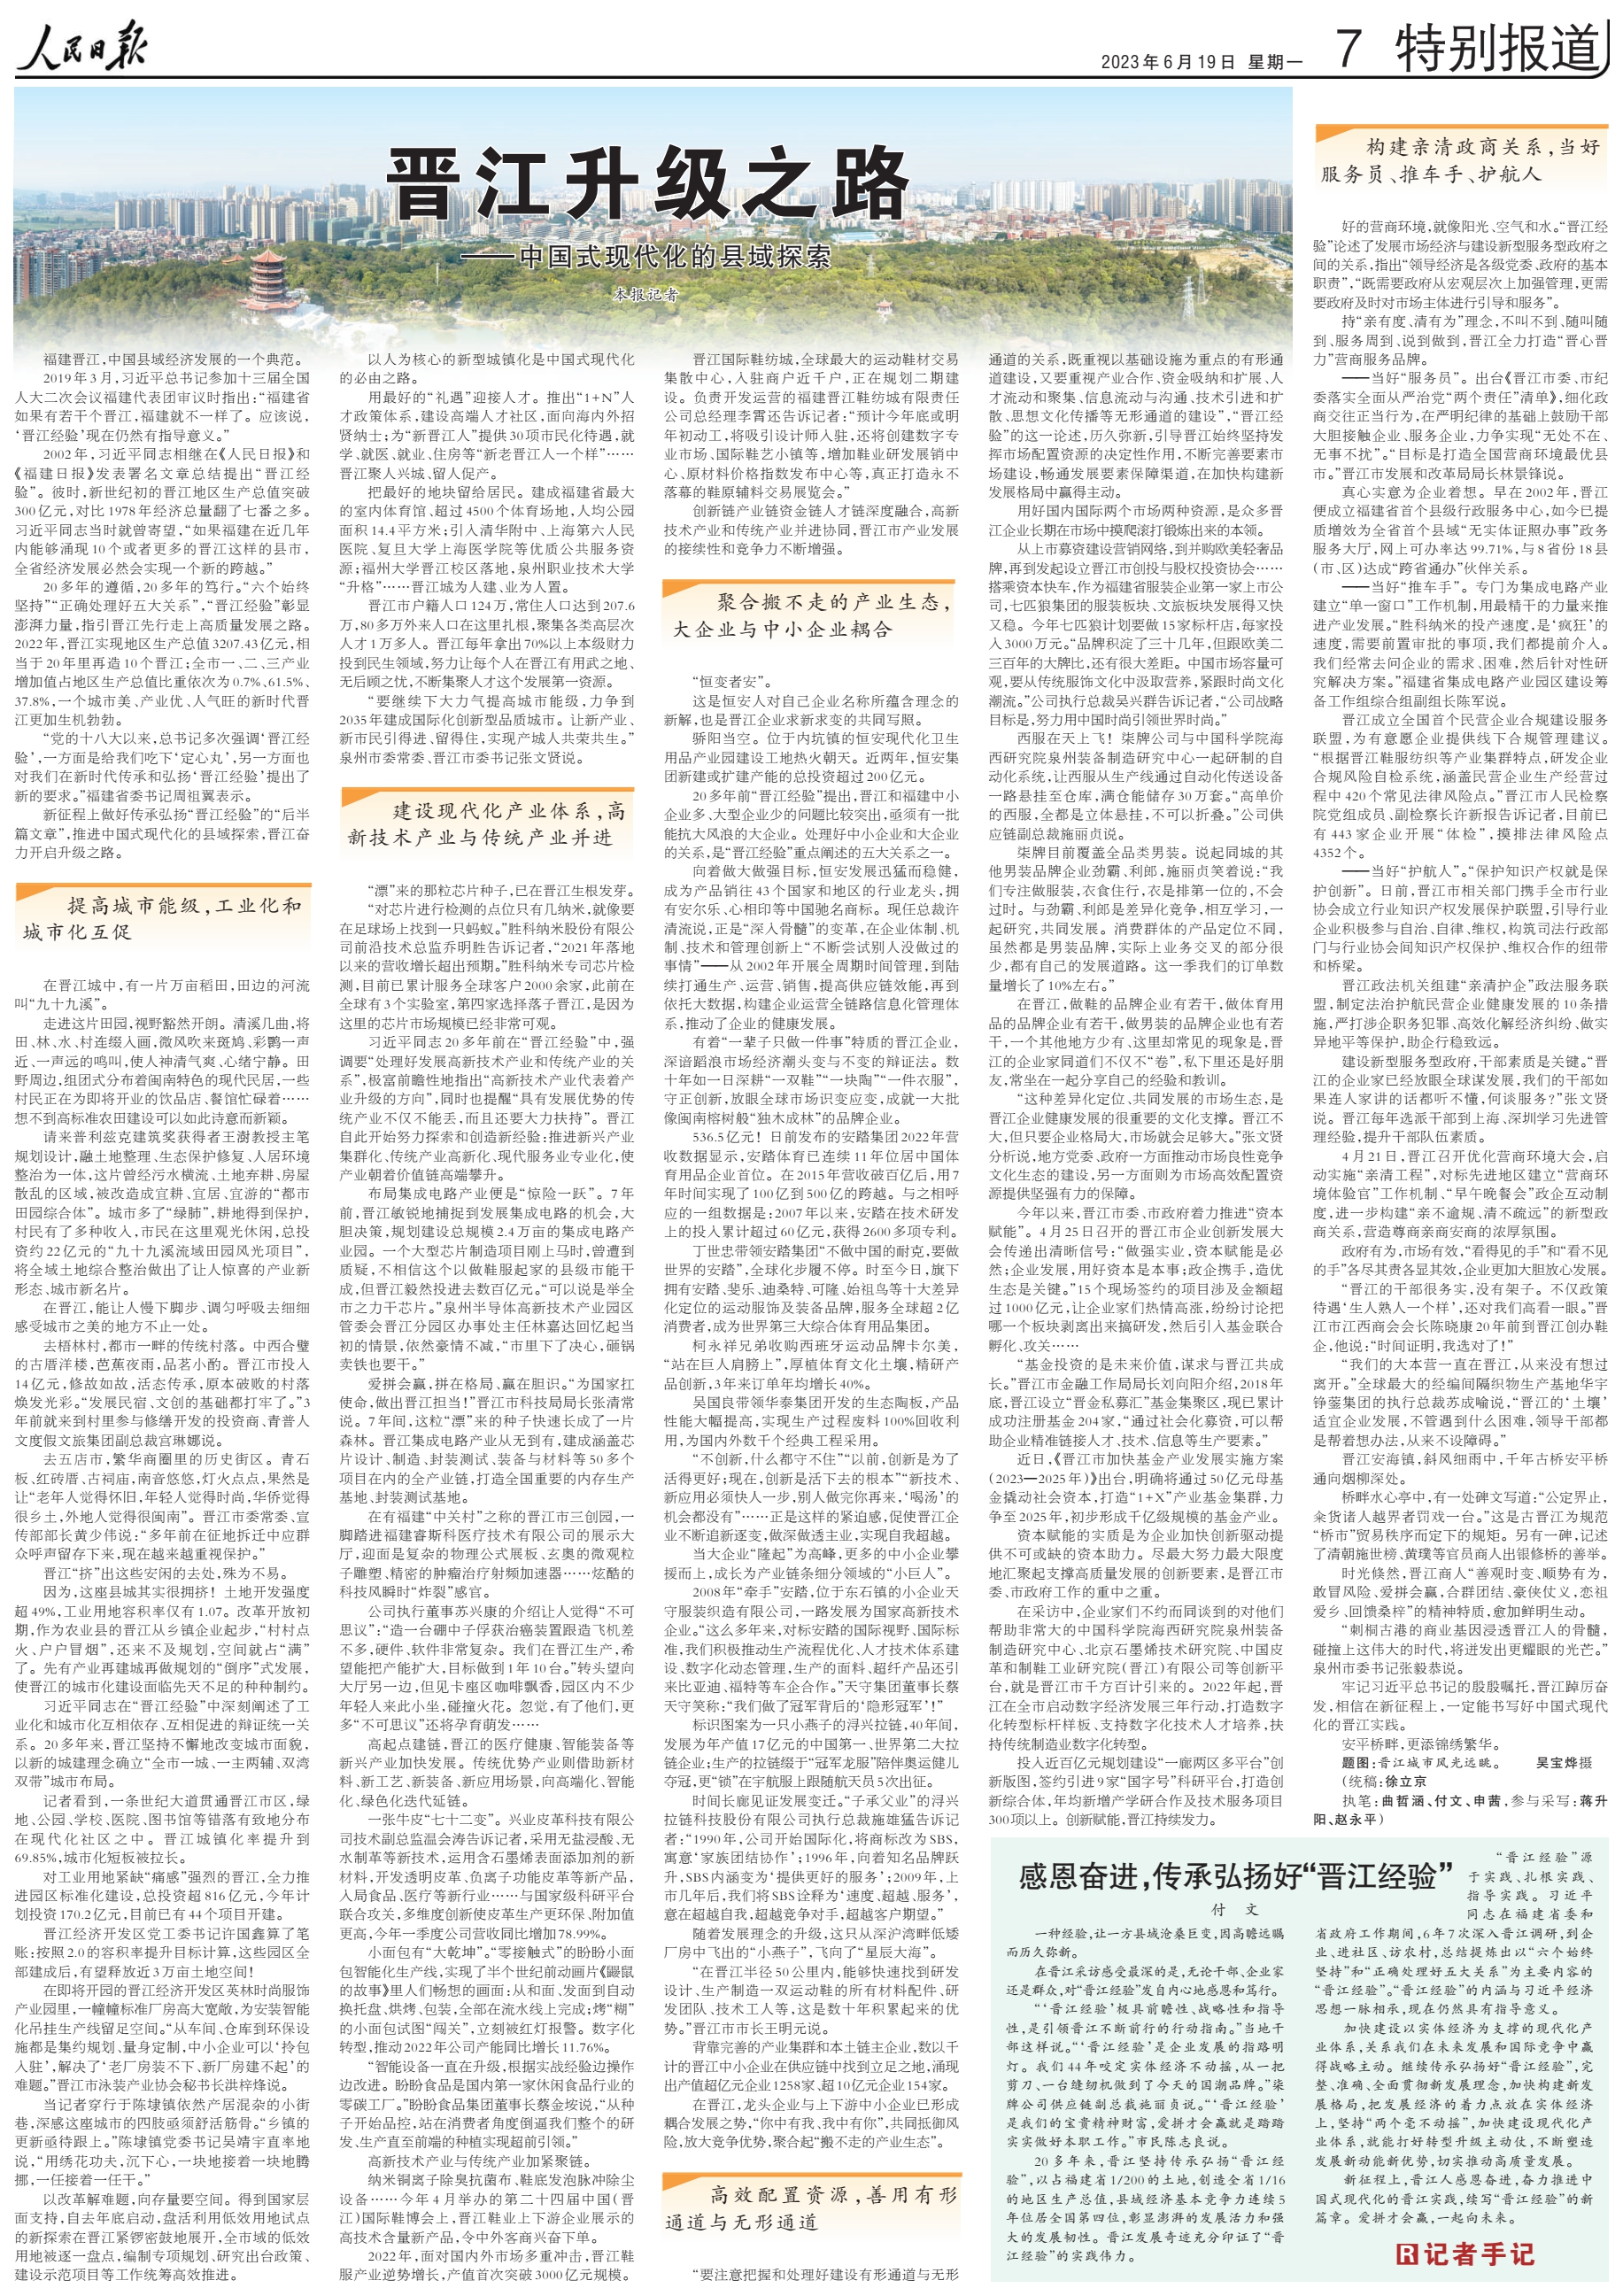 晋江升级之路——中国式现代化的县域探索